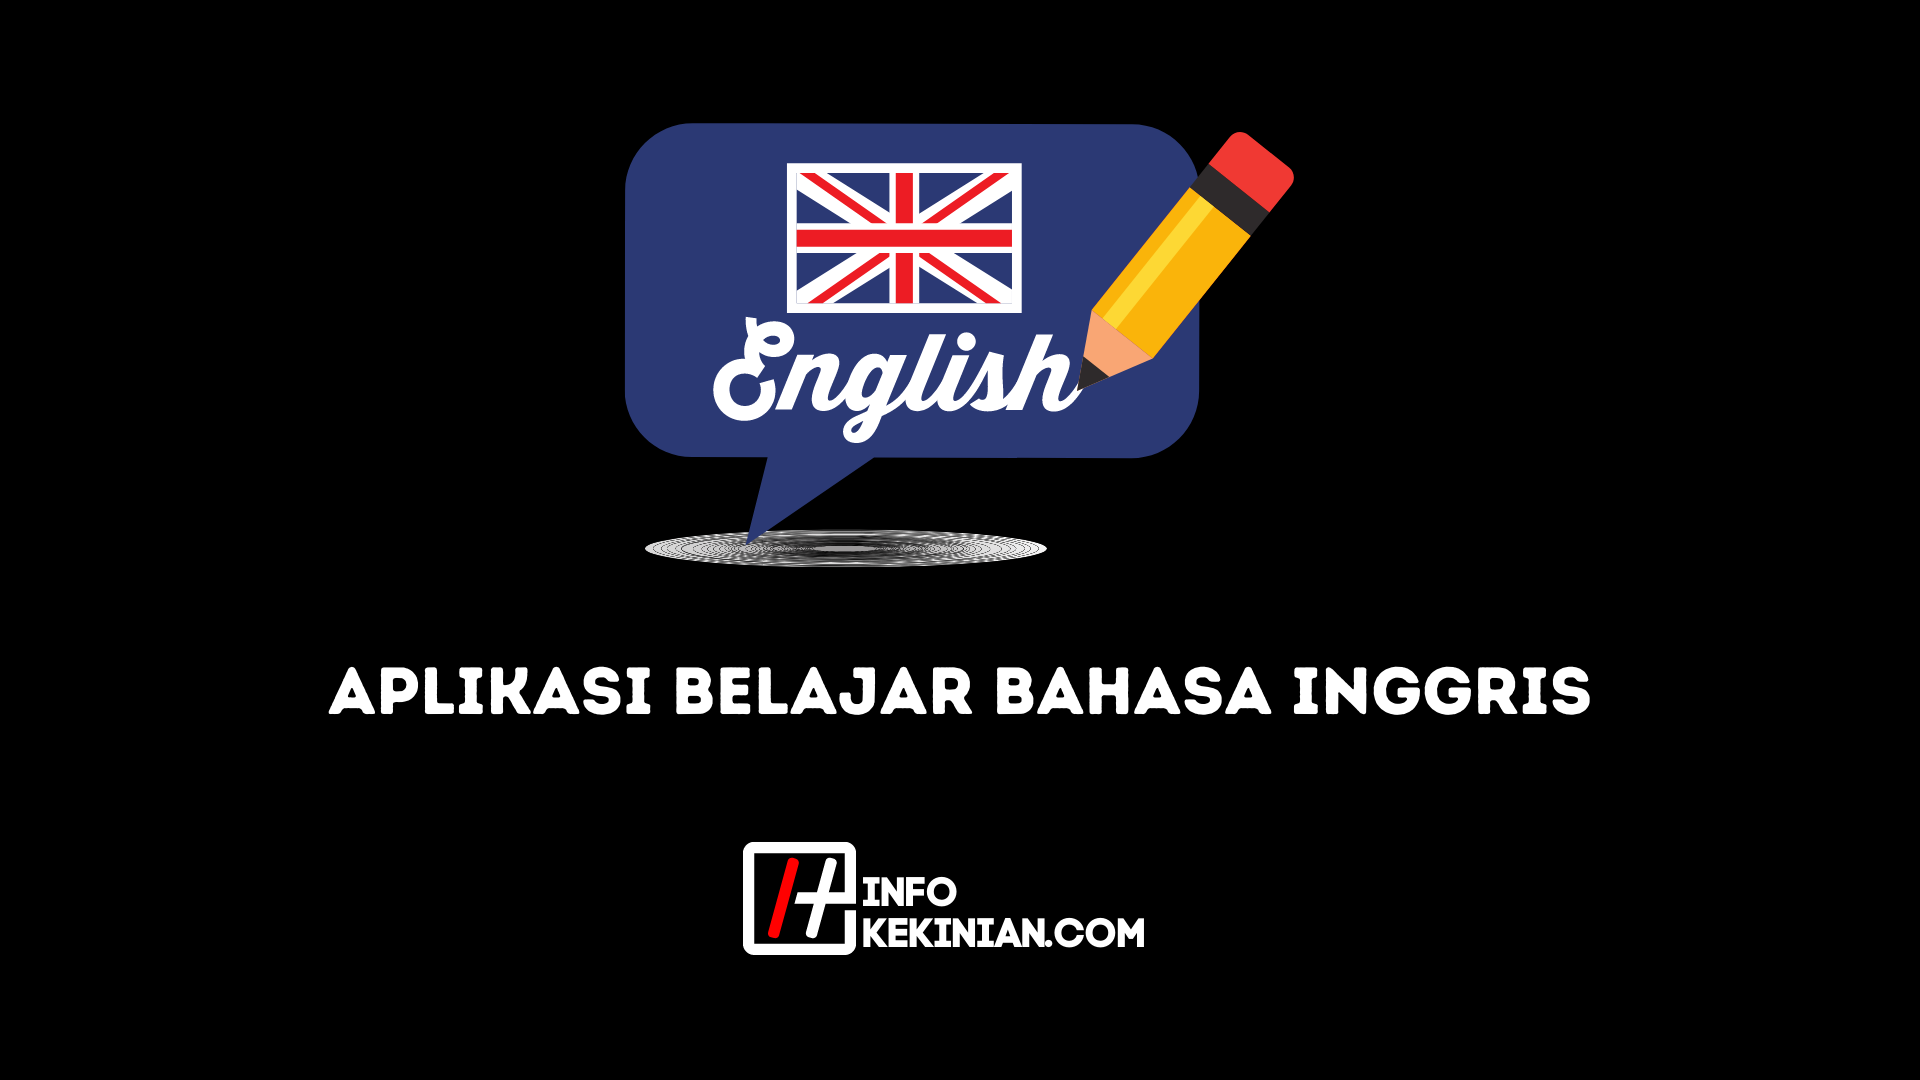 Aplikasi belajar bahasa inggris